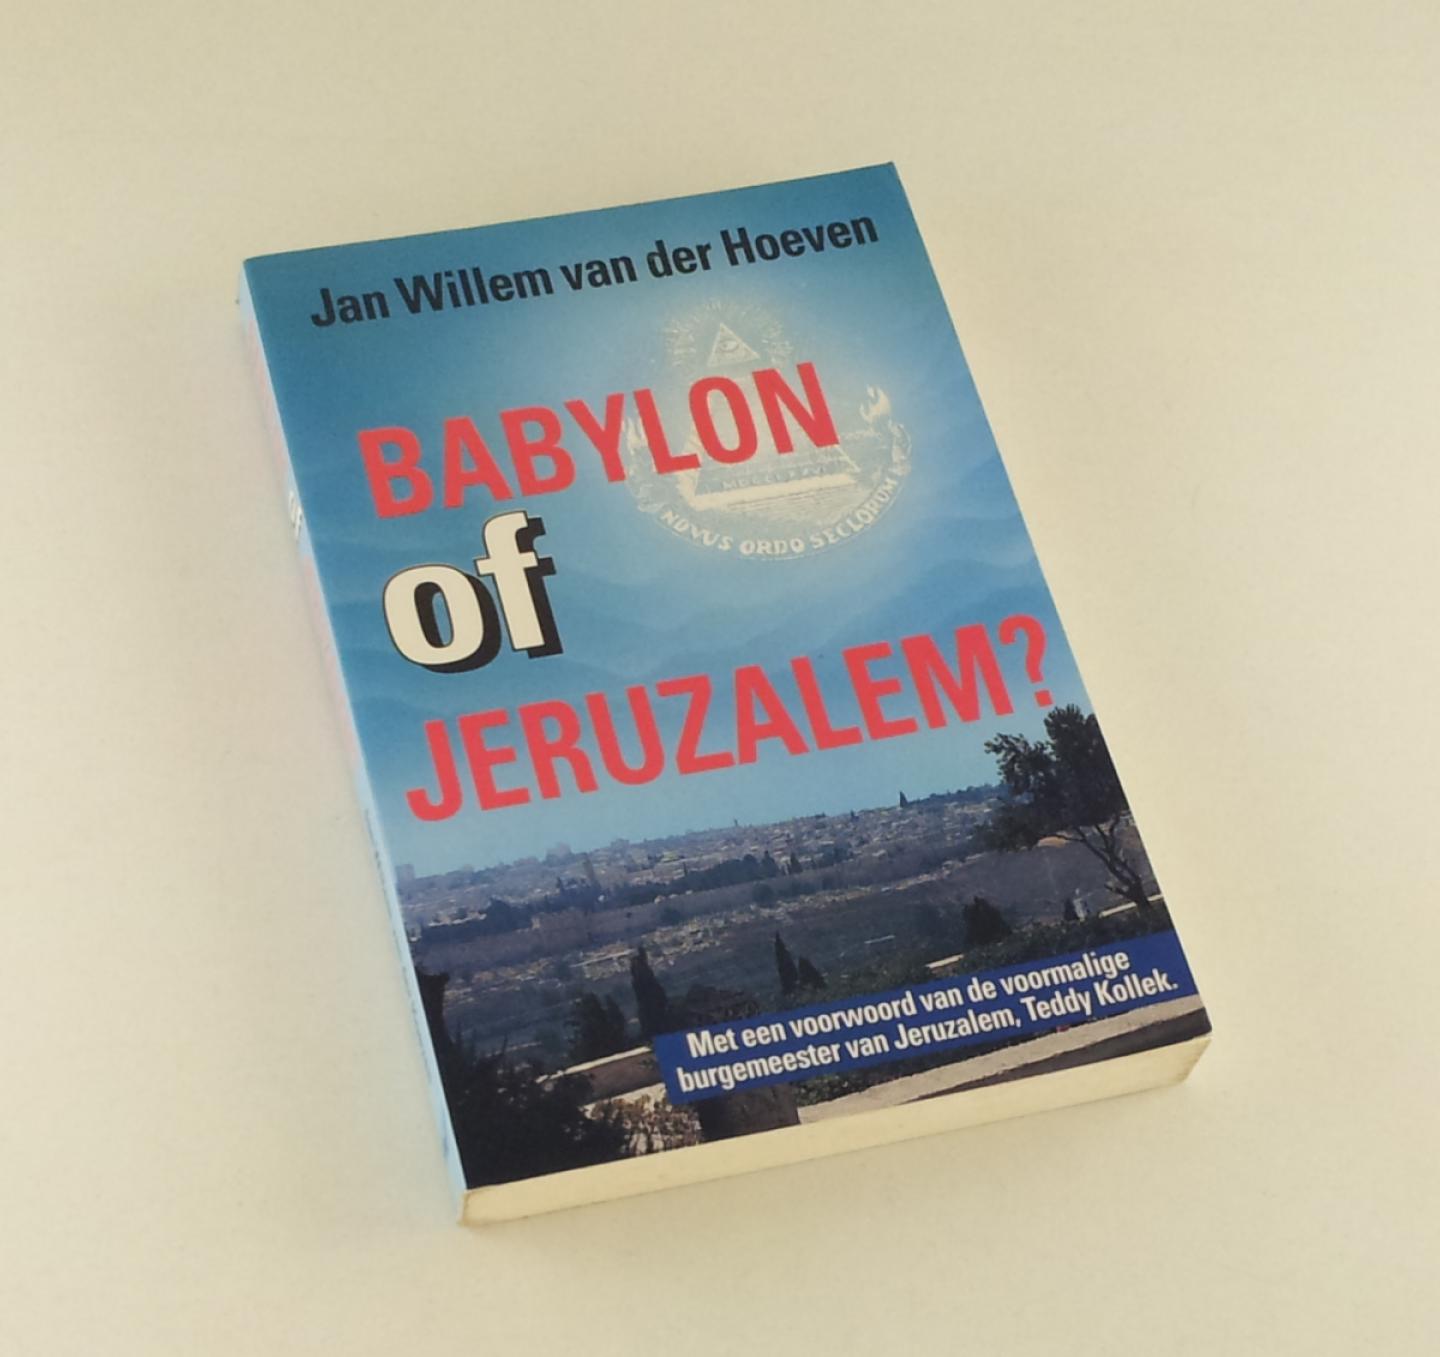 Hoeven, Jan Willem van der - Babylon of Jeruzalem?